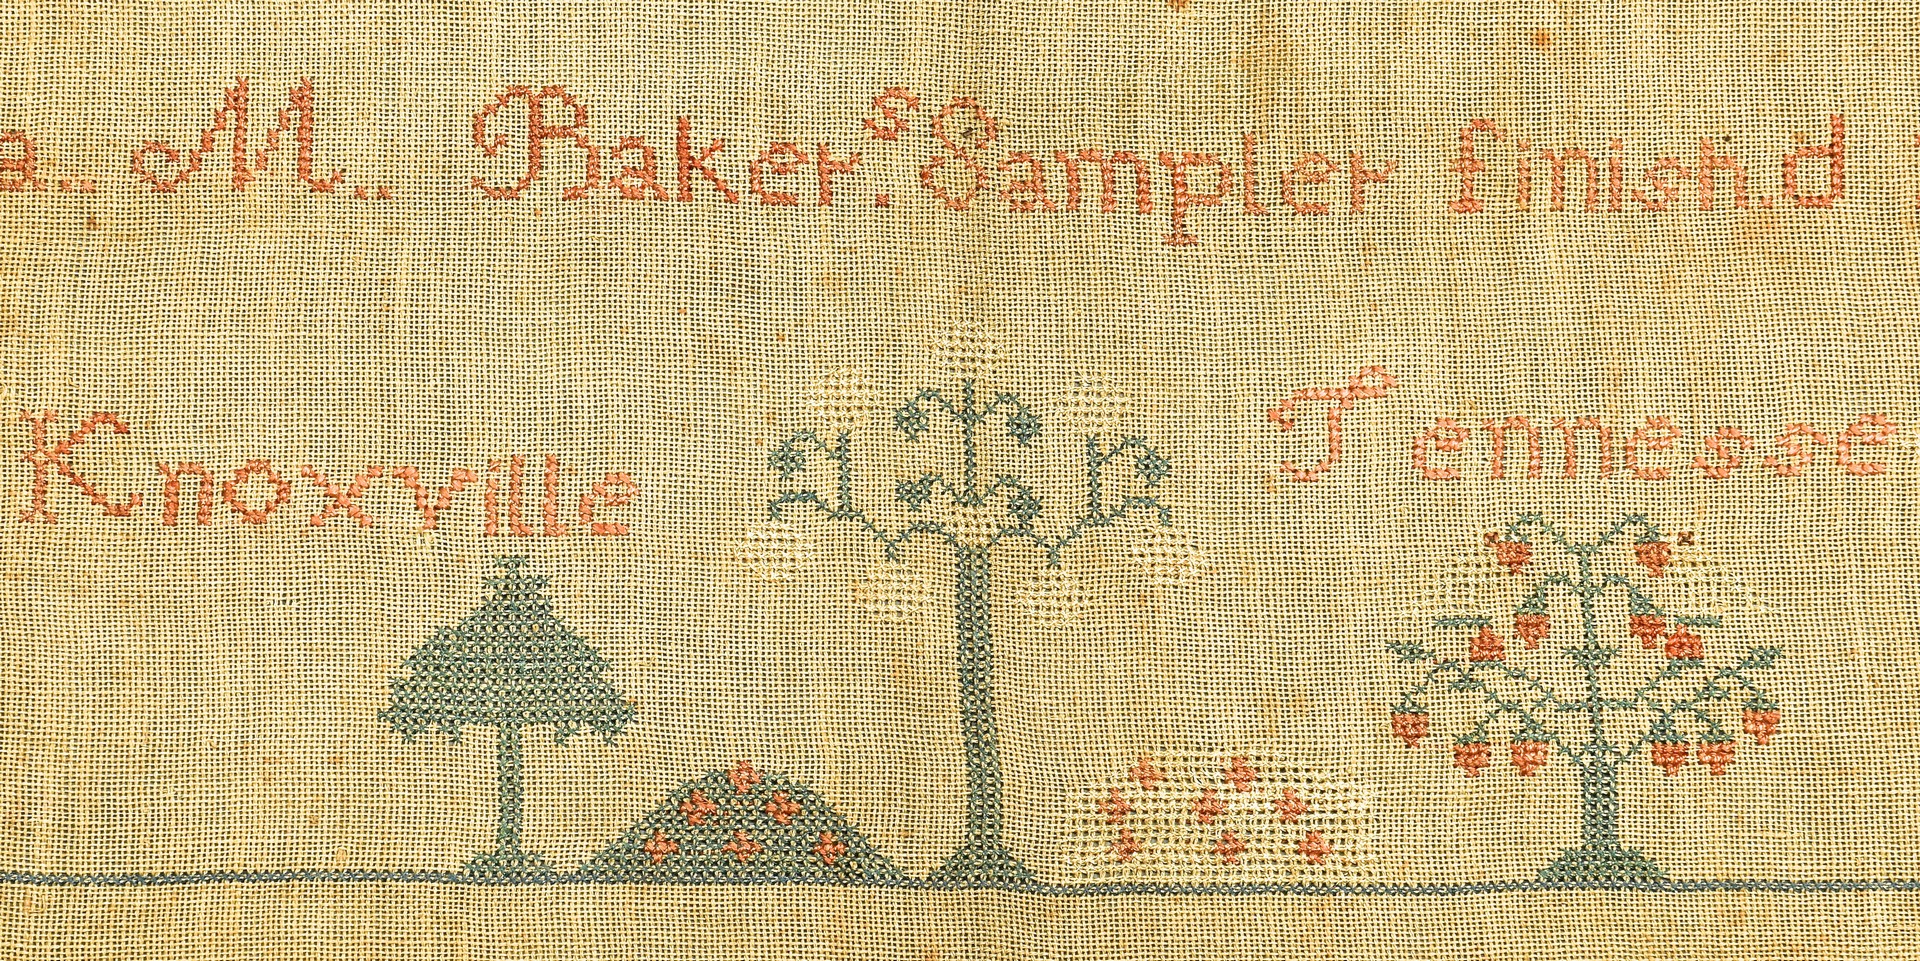 Lot 264: Knoxville, TN Sampler, I. Baker, 1848